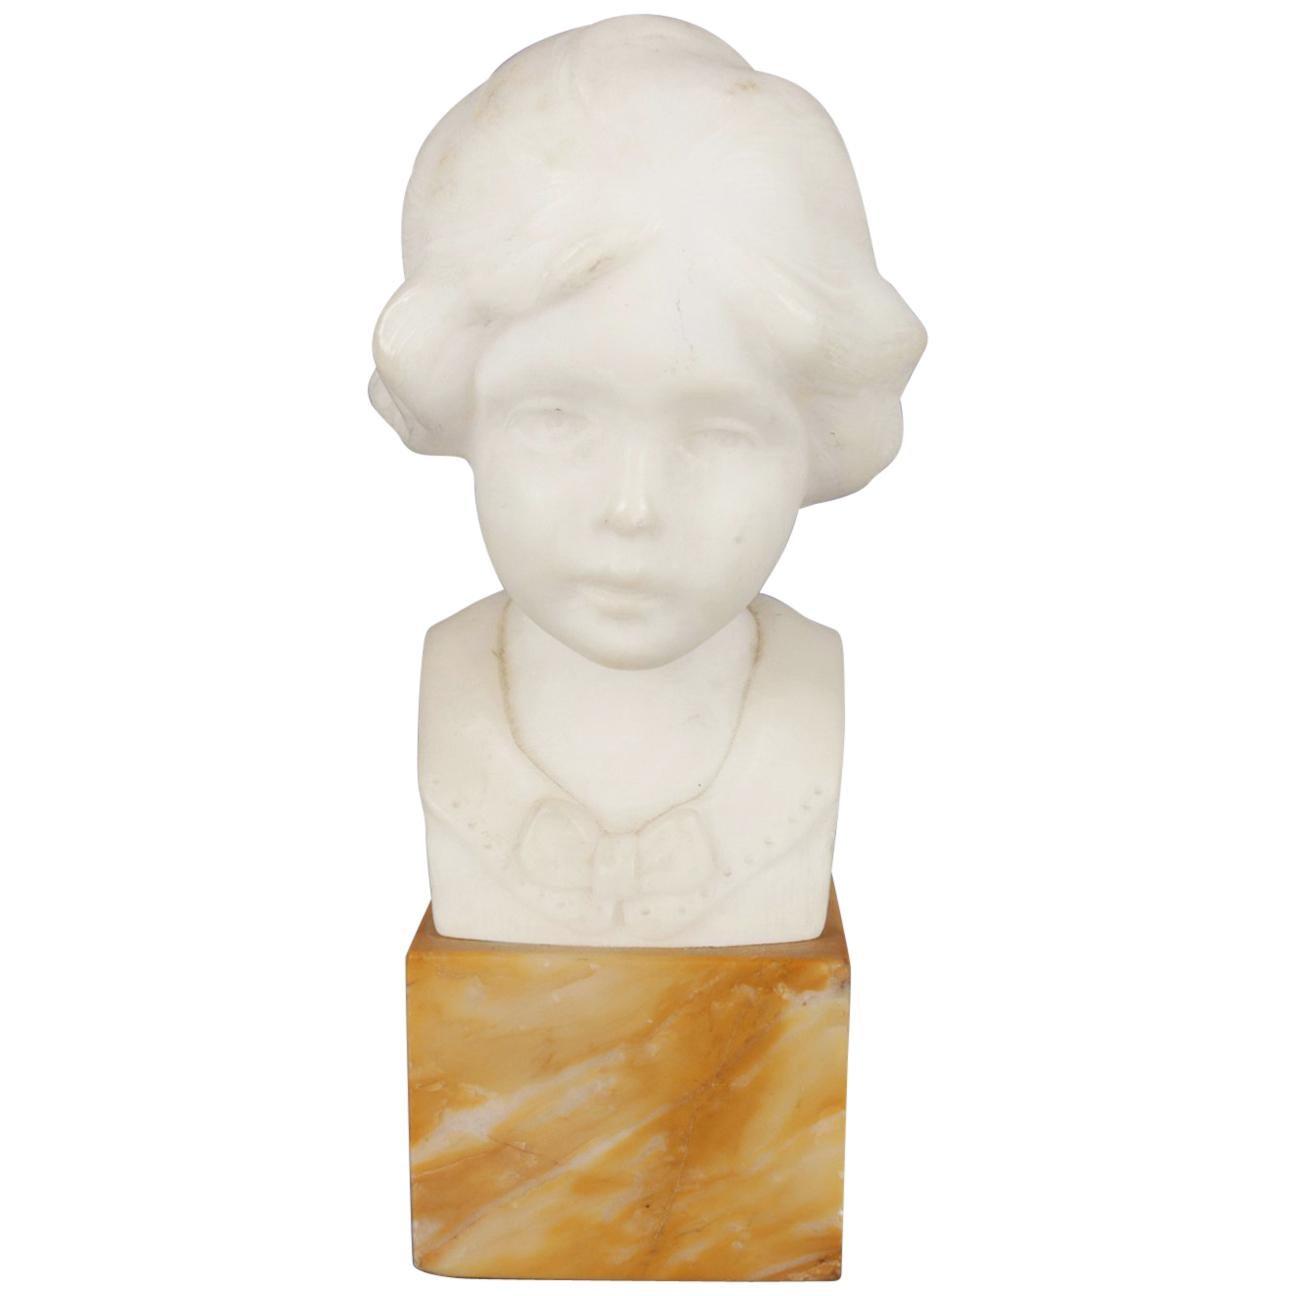 Hand-Carved Alabaster Portrait Bust Sculpture of Girl, Signed Greiwer